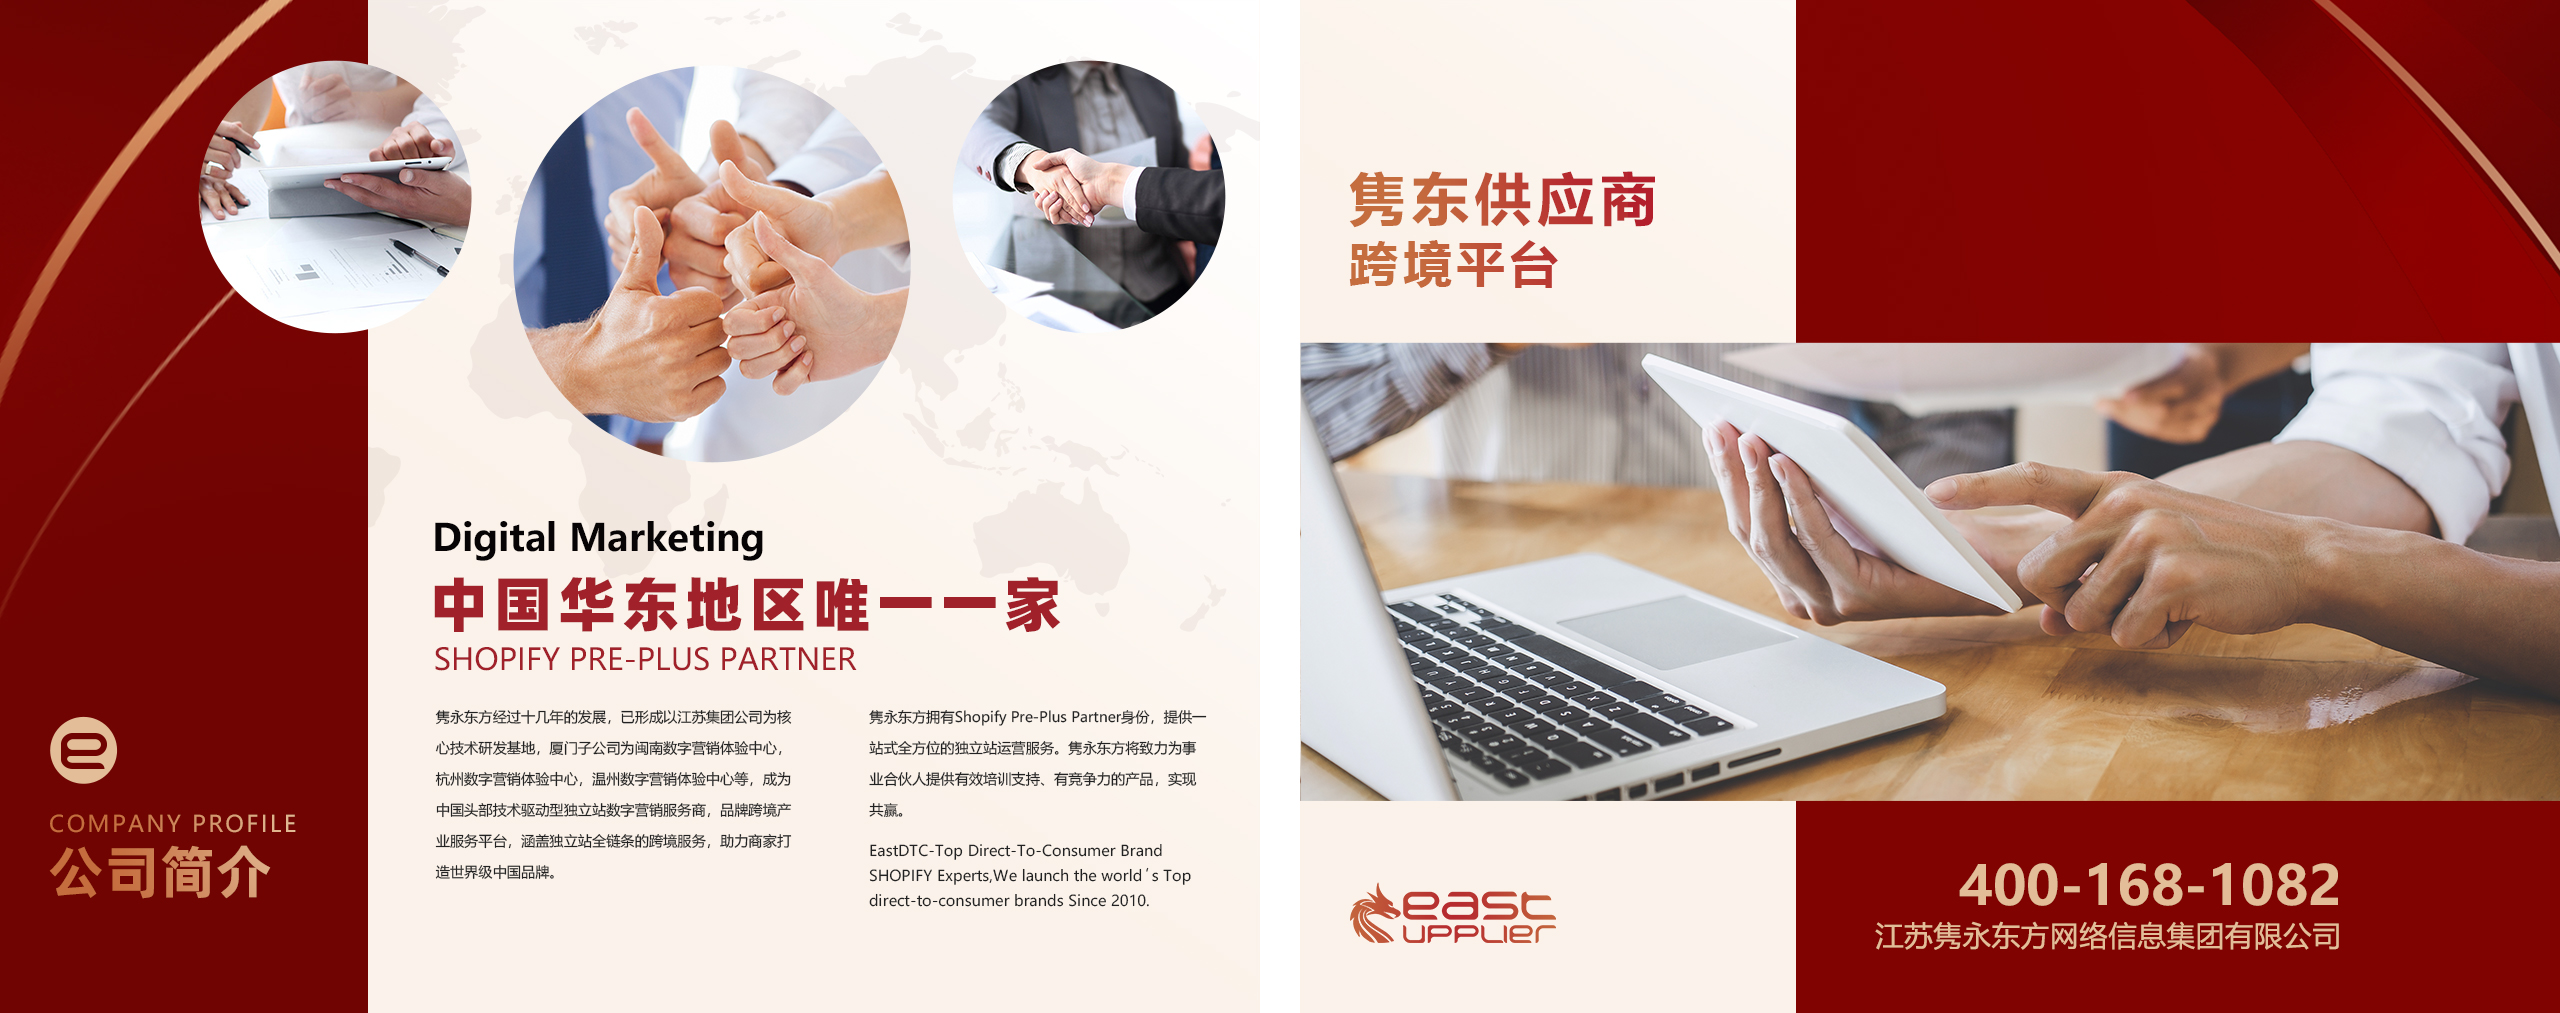 乐清市戴尔电子有限公司官方网站上线运营